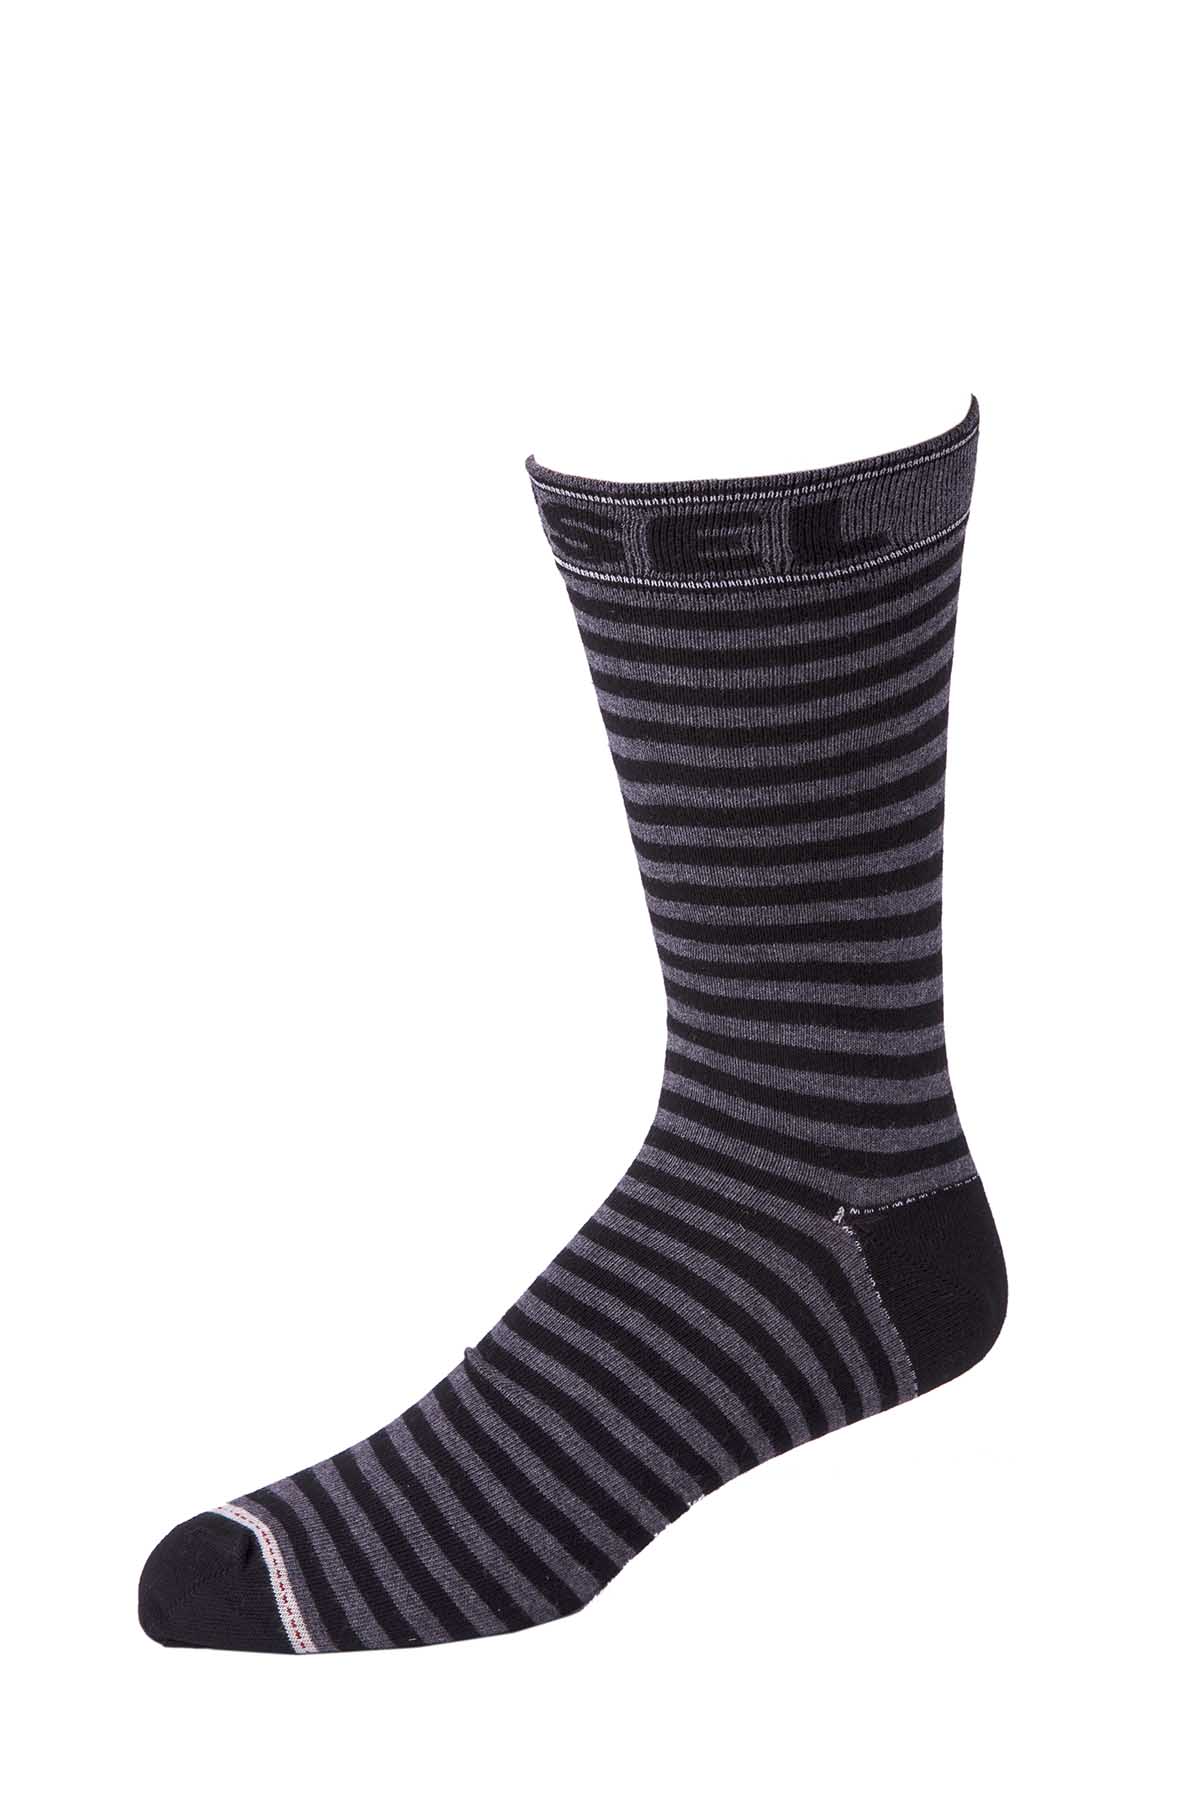 Diesel Grey & Black Stripe Ray Socks